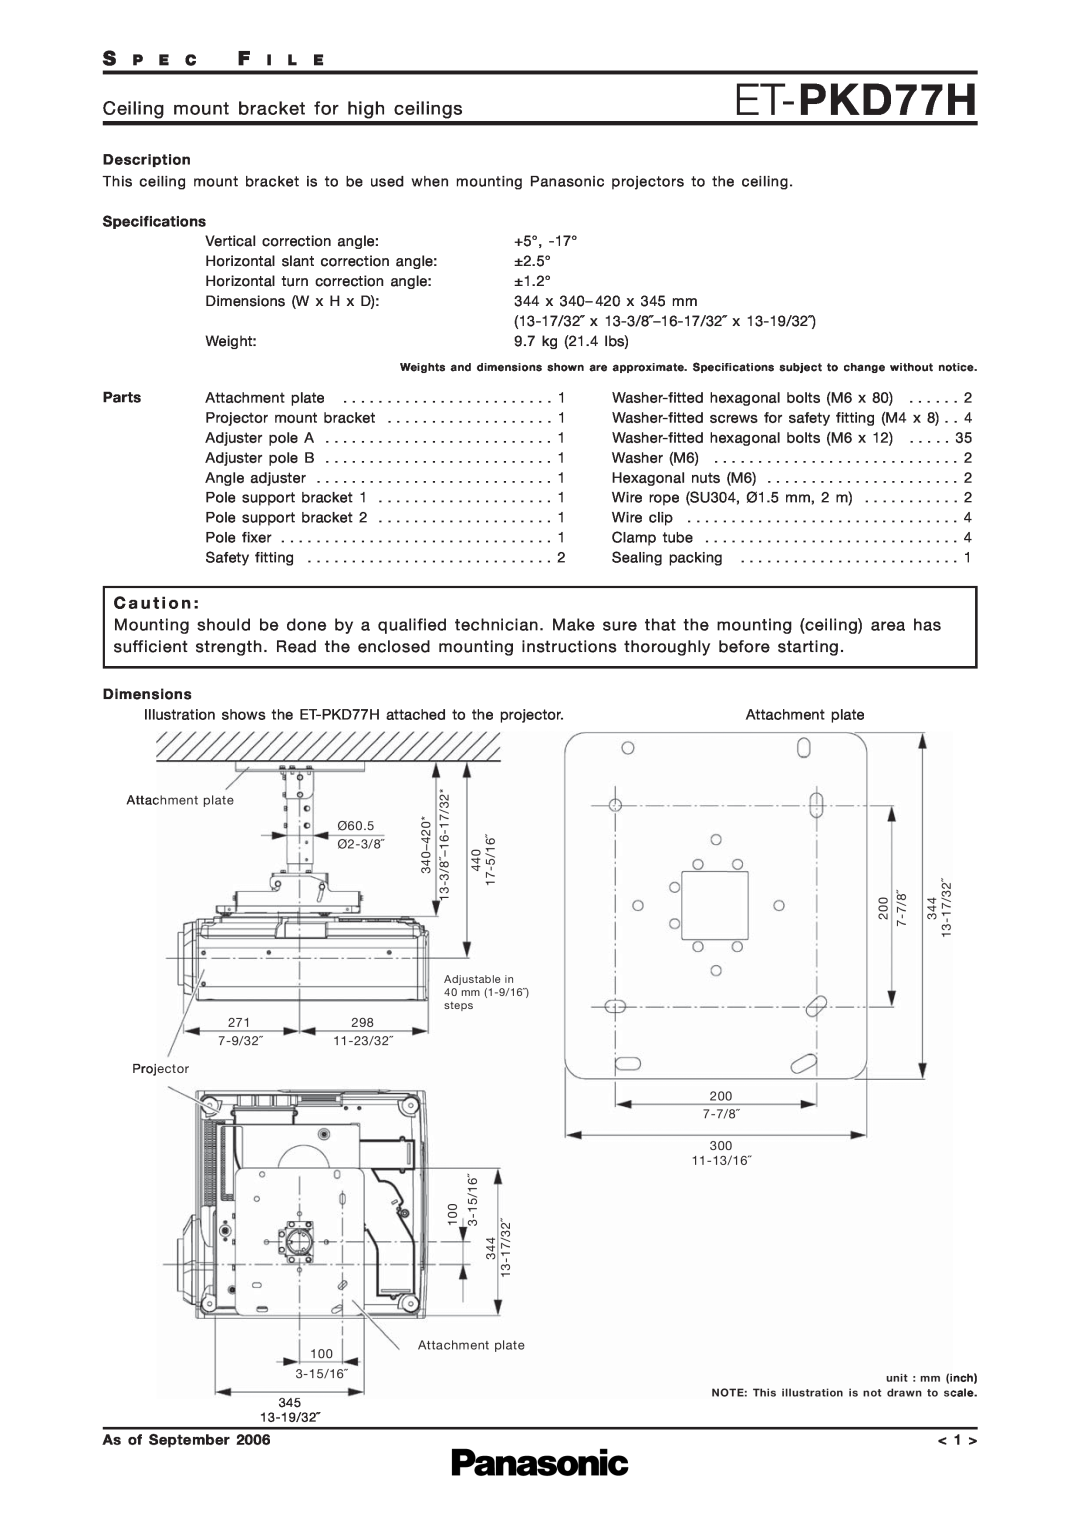 Panasonic ET-PKD77H specifications Ceiling mount bracket for high ceilings, C a u t i o n, S P E C F I L E, Description 